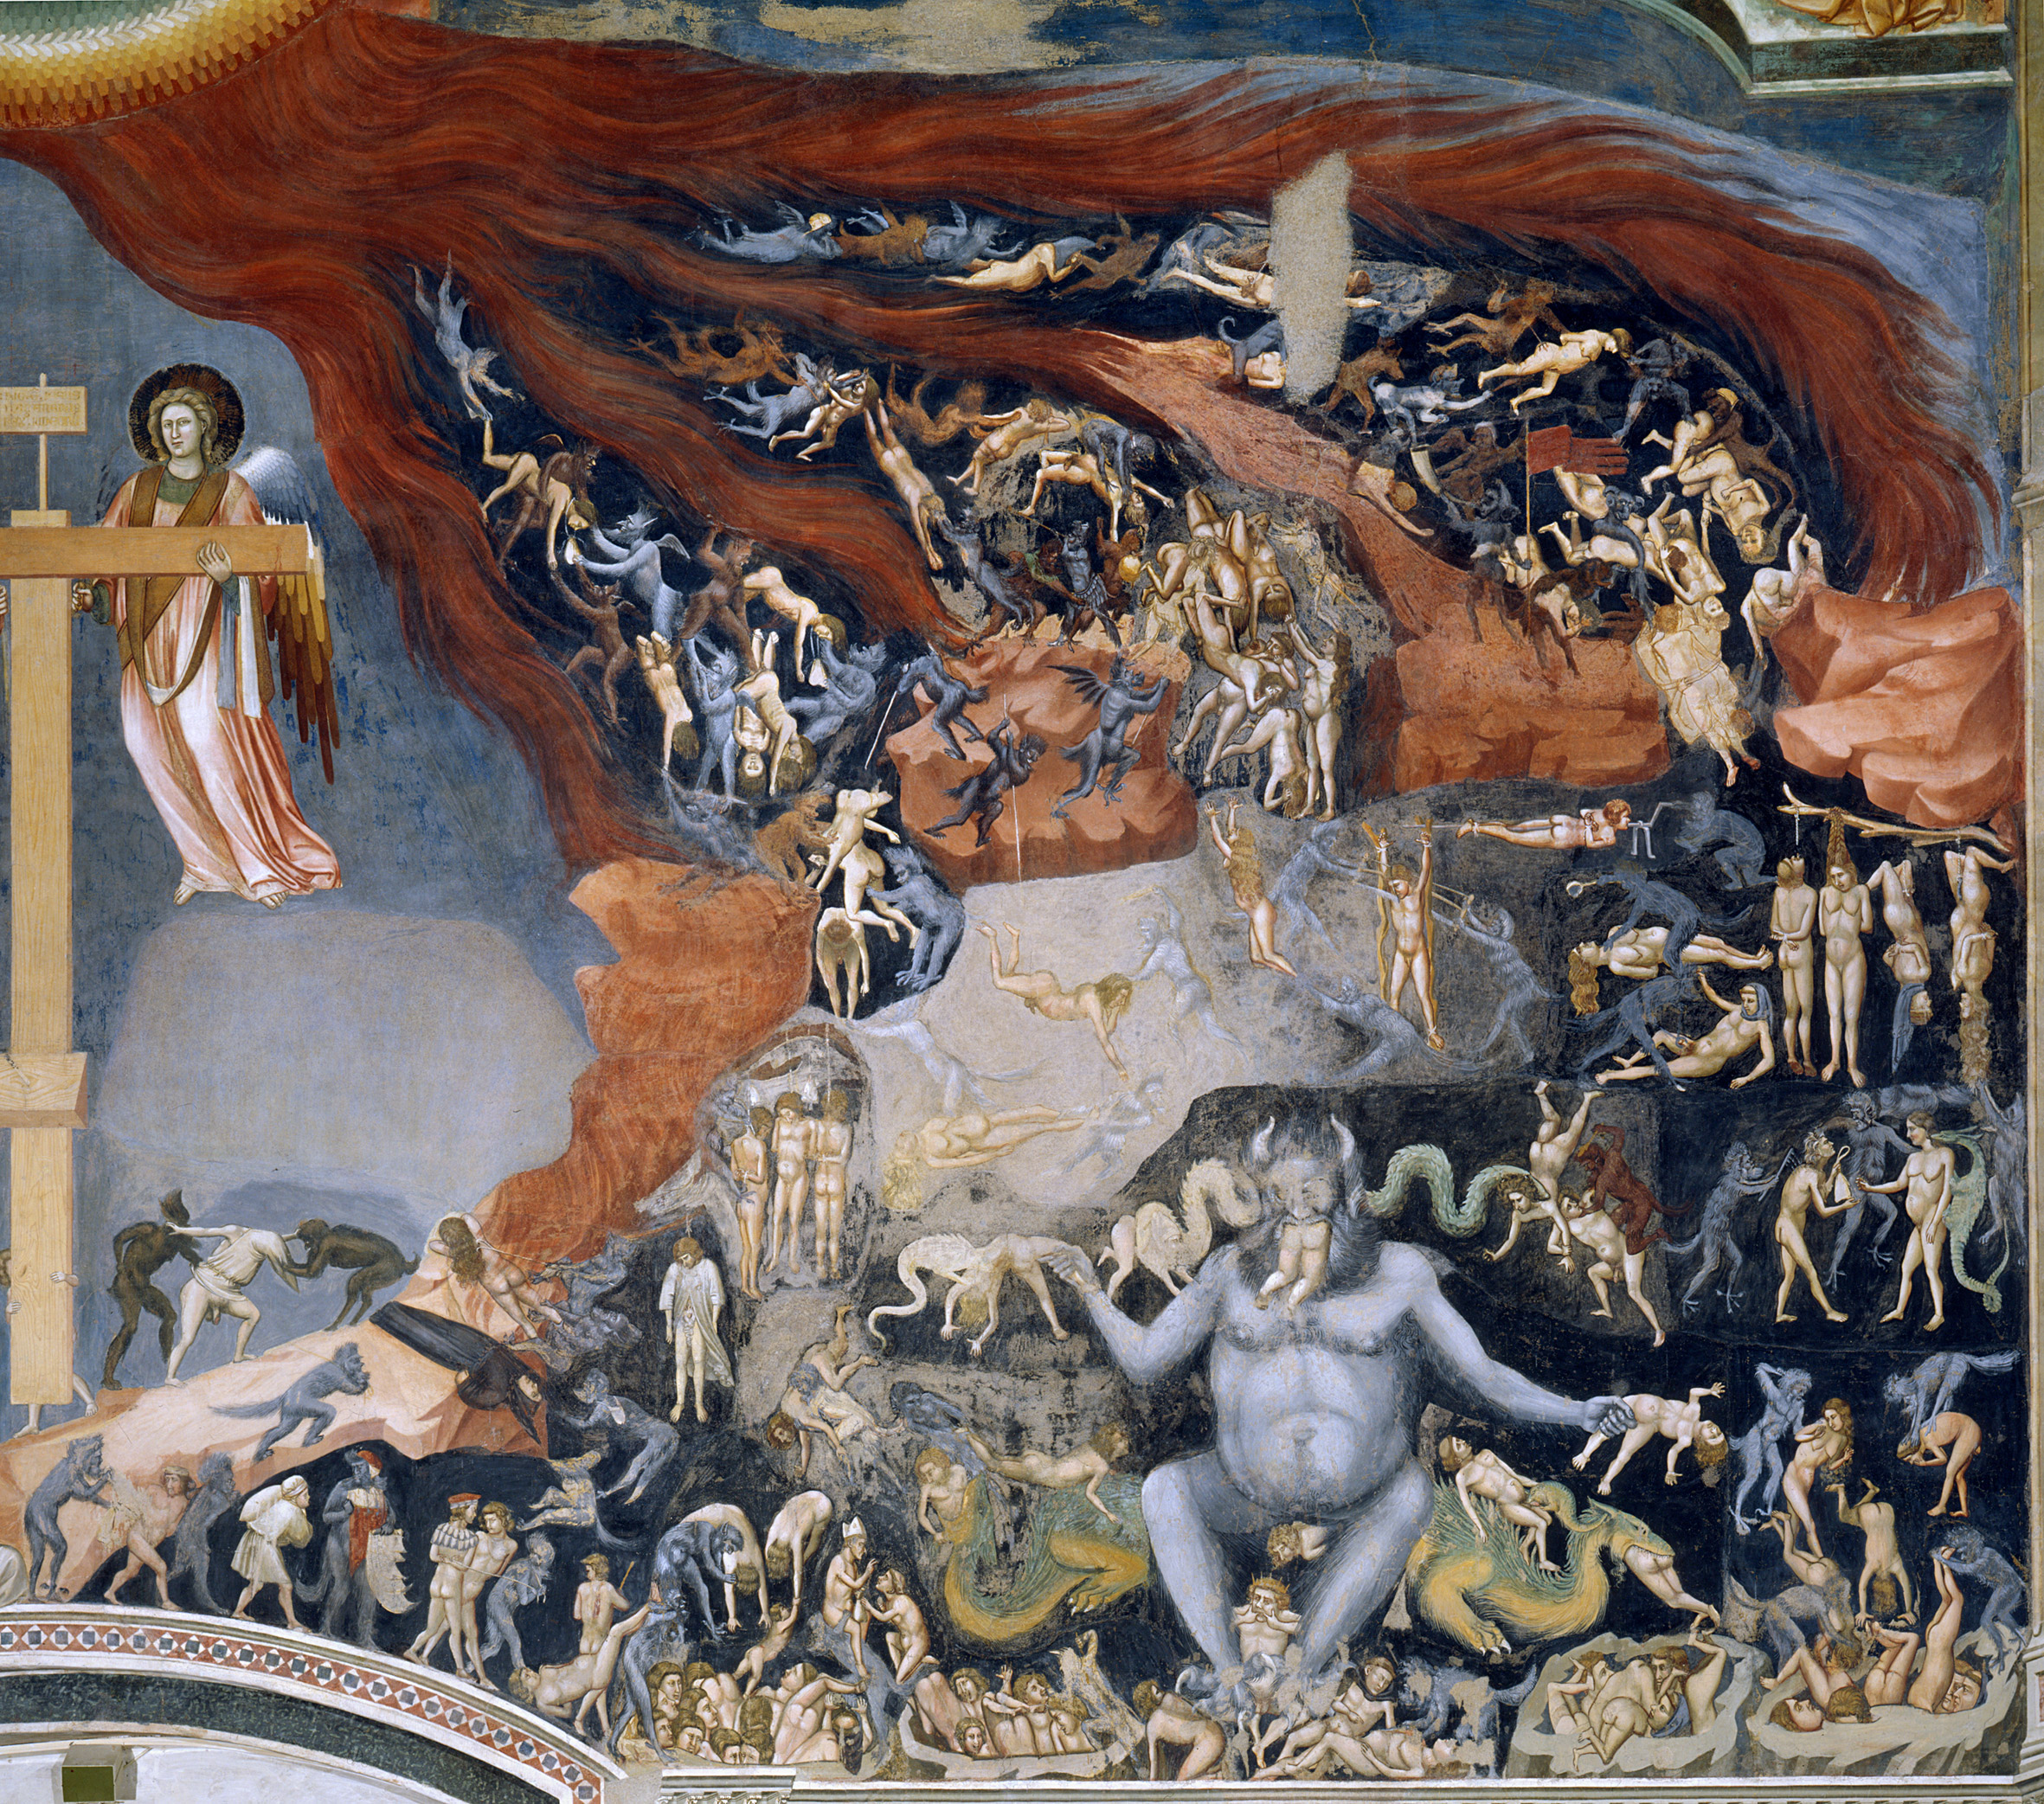 Inferno by Giotto di Bondone - 1305 